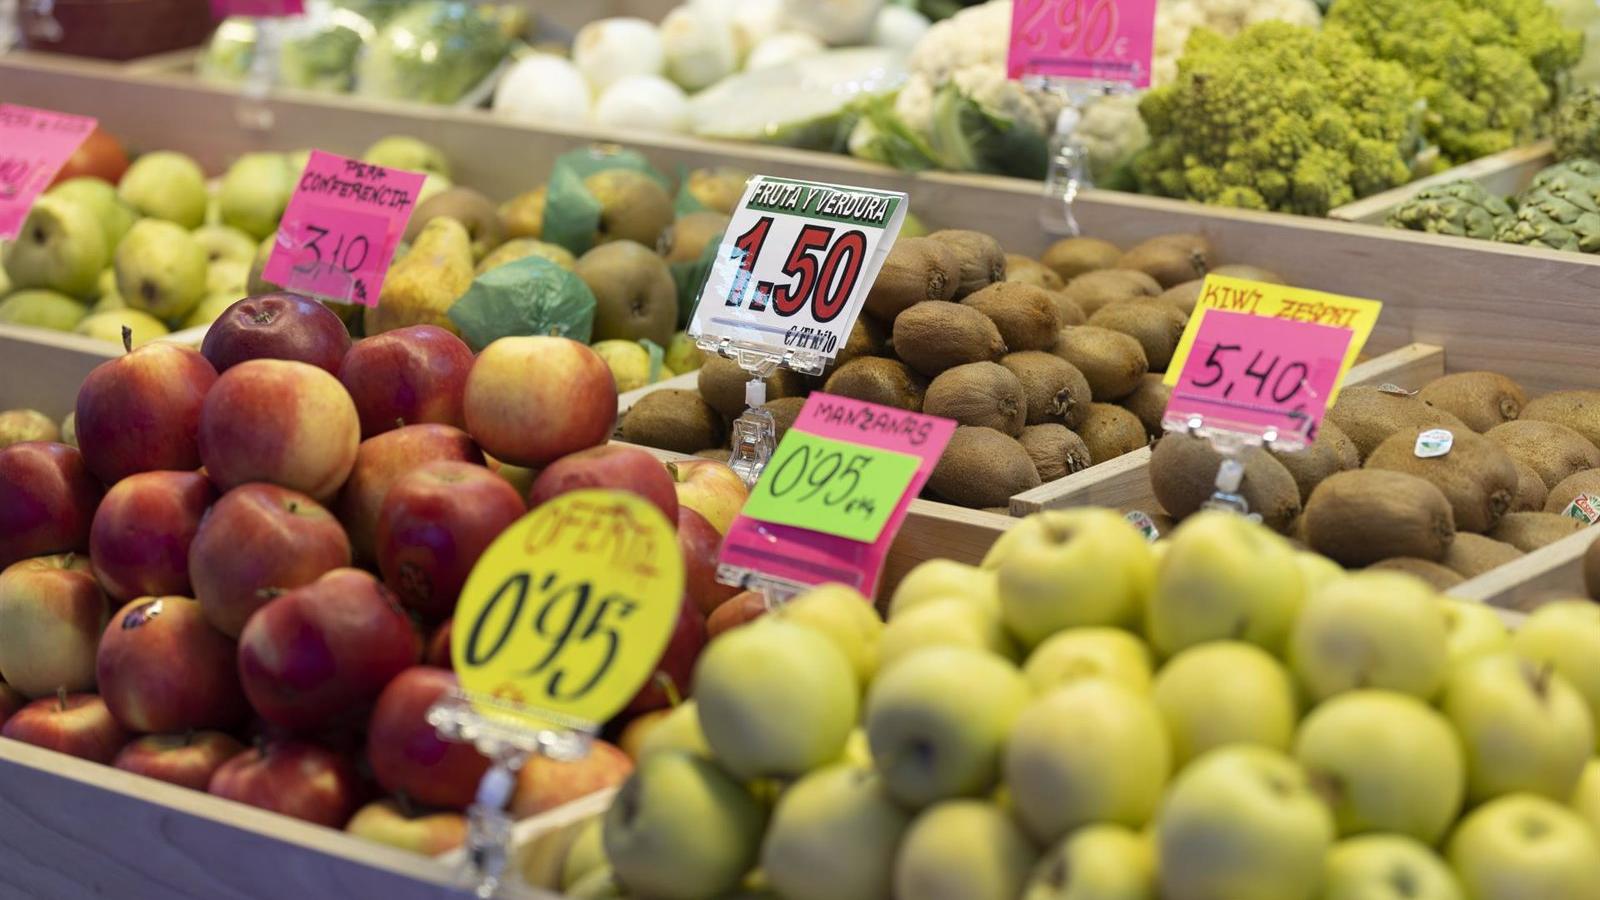 Los mercados municipales de Madrid y las galerías de alimentación recibirán una inyección municipal de 4,3 millones